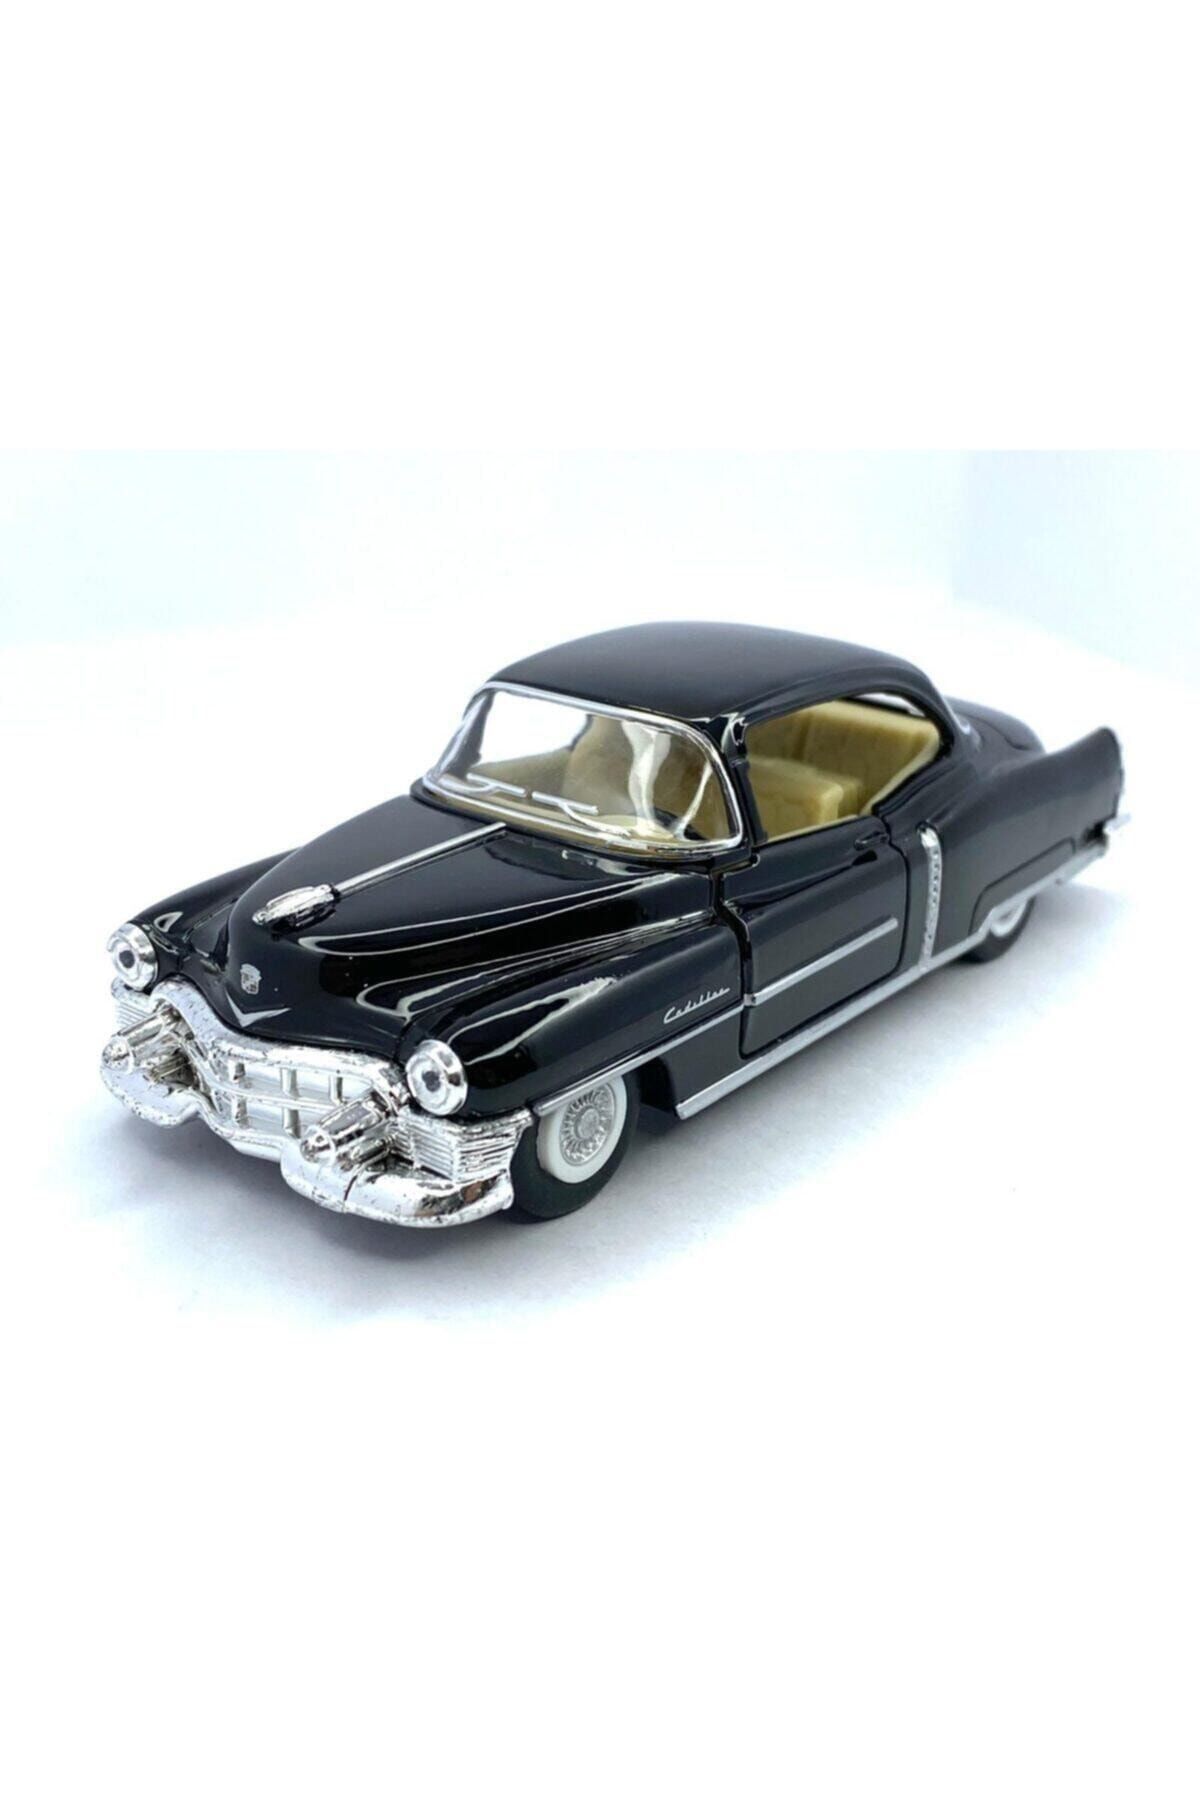 Kinsmart 1953 Cadillac Serıes 62 Coupe Çek Bırak 5inch. Lisanslı Model Araba, Oyuncak Araba 1:43